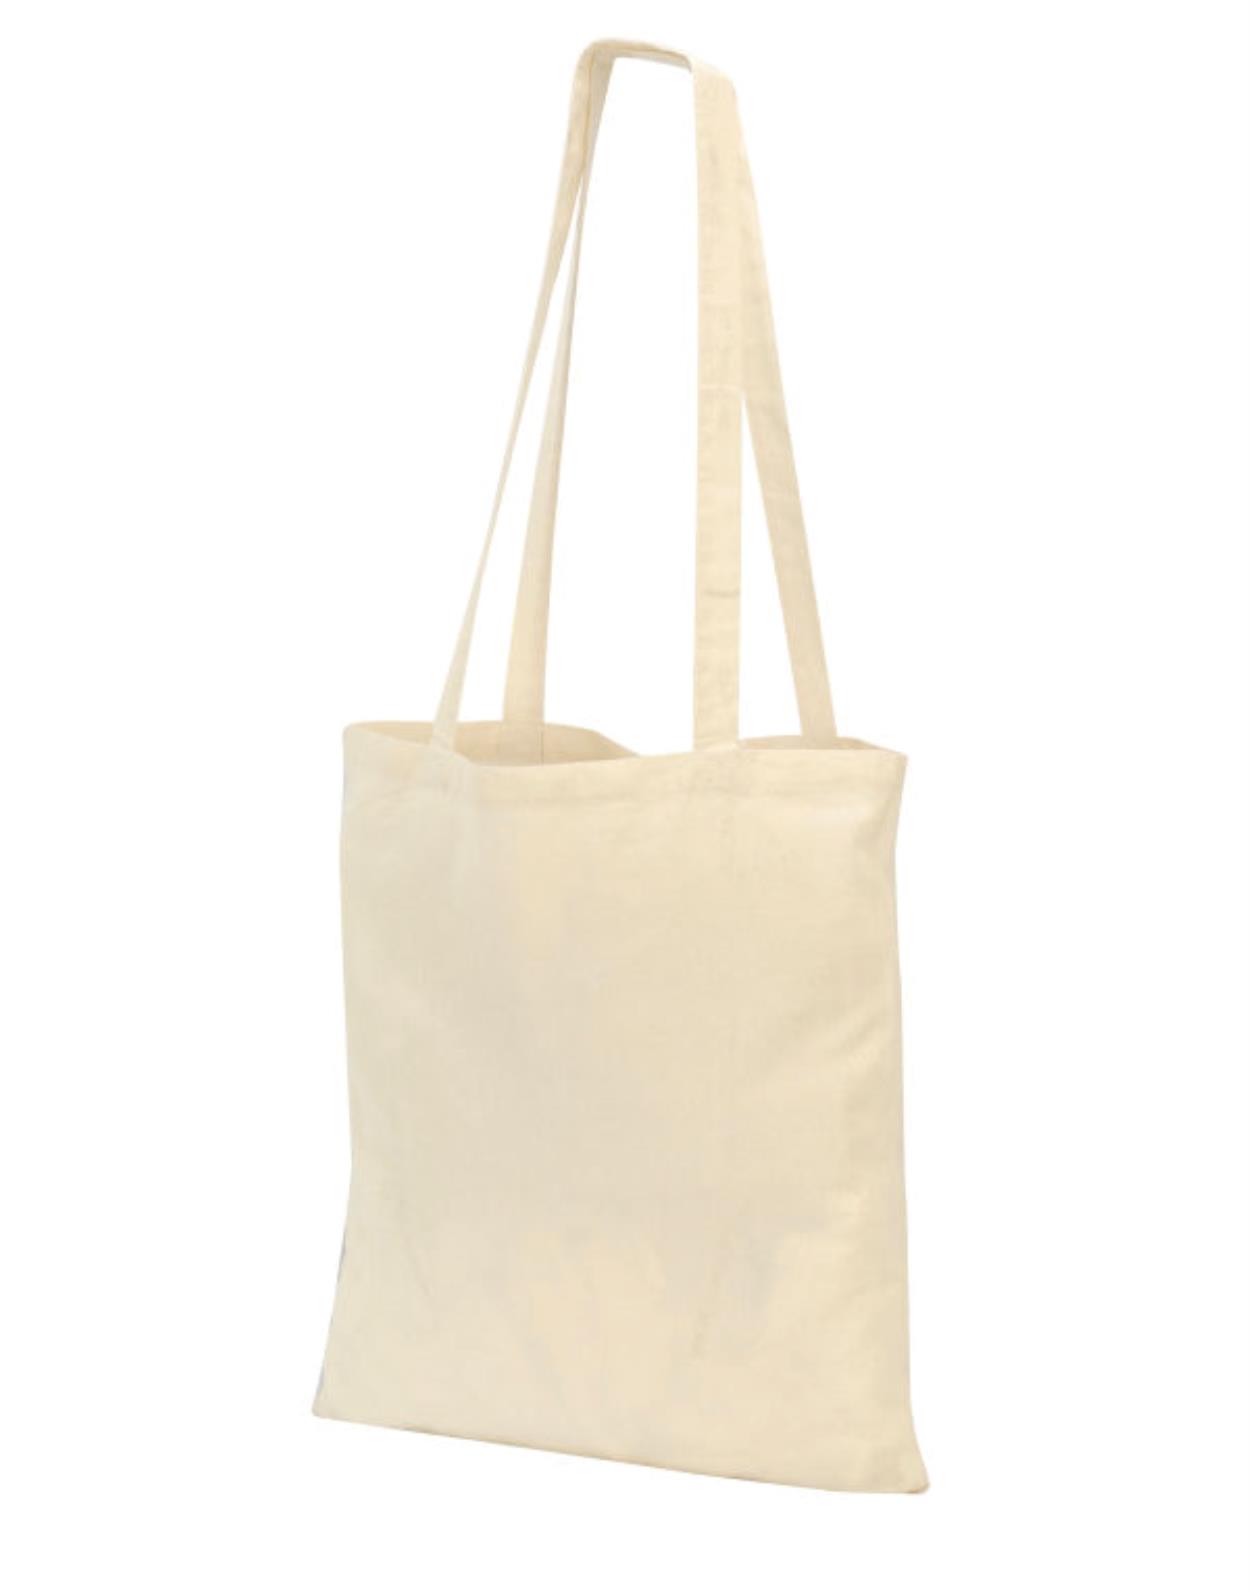 SH4112 Guildford Cotton Shopper/Tote Shoulder Bag Image 1